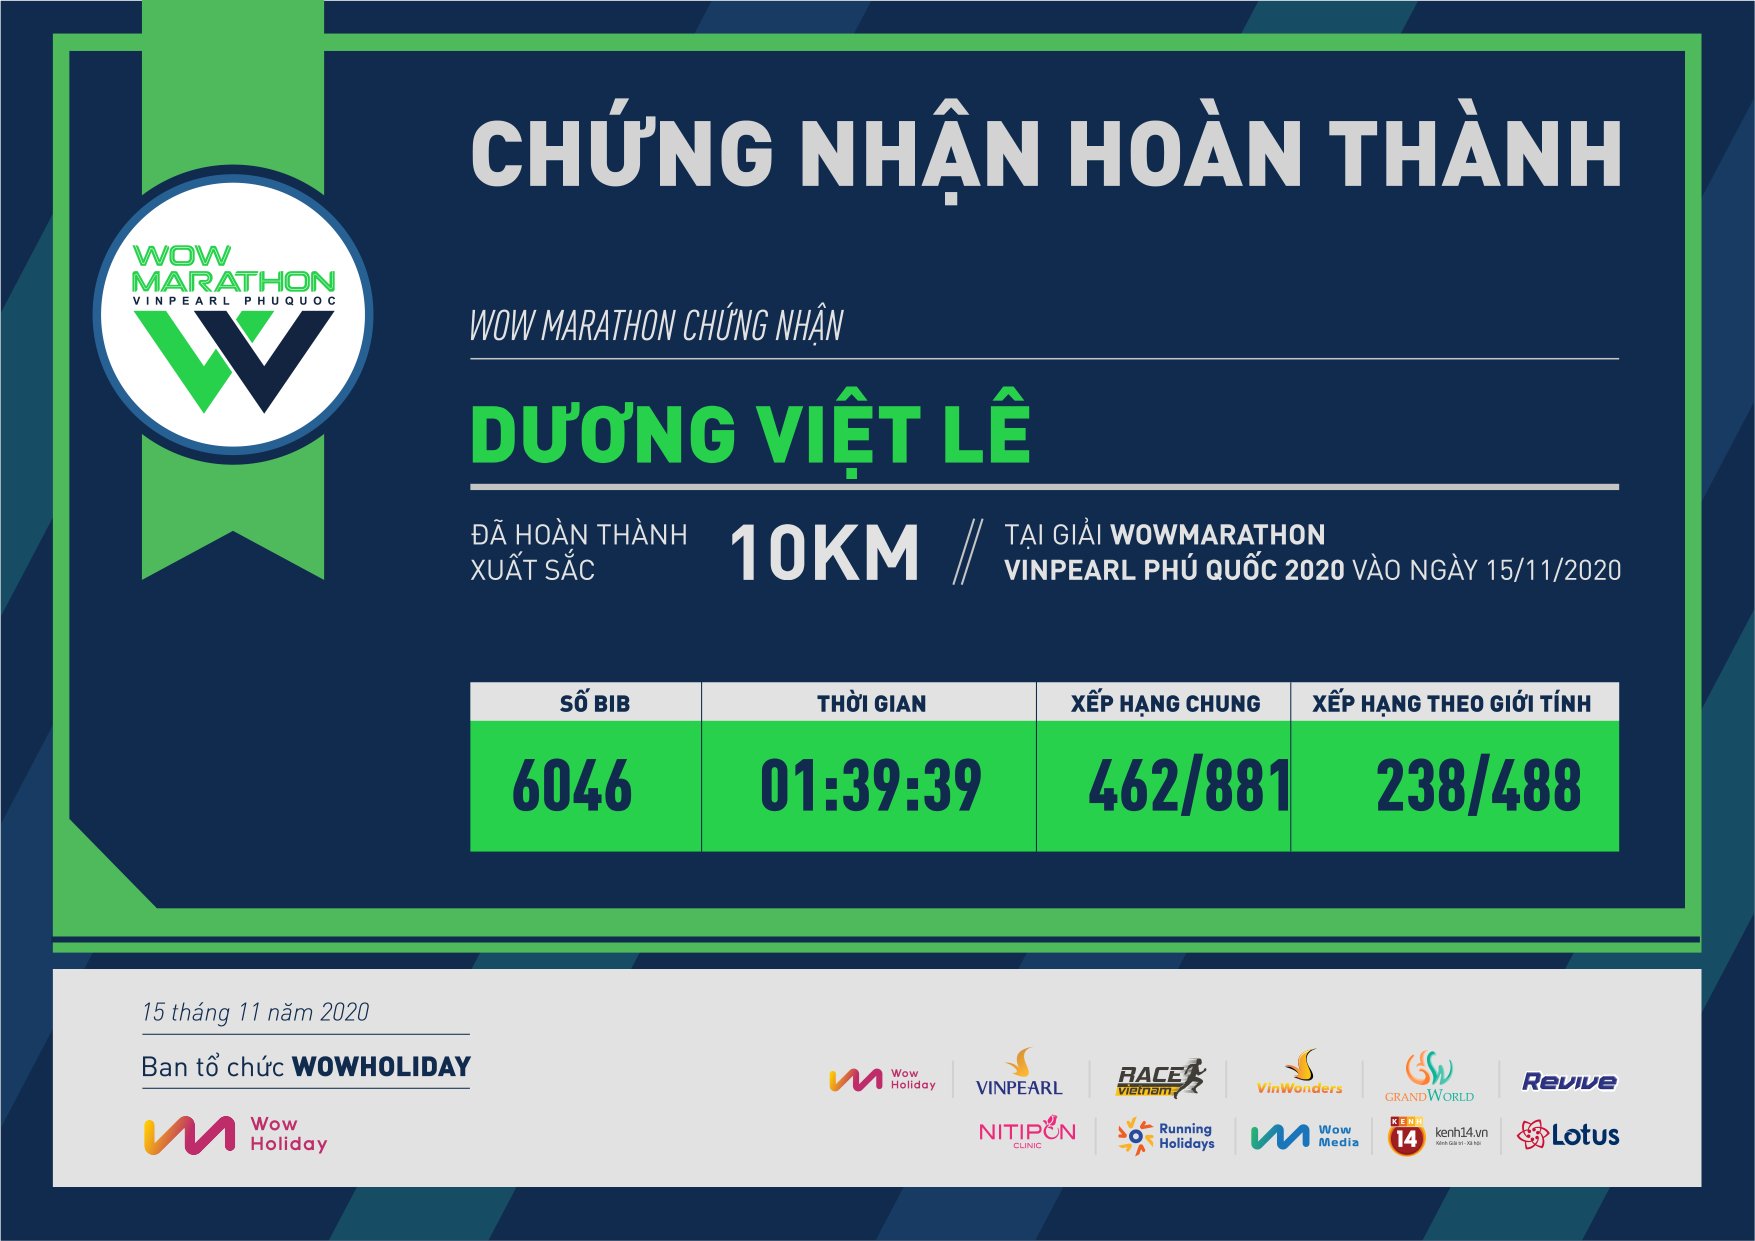 6046 - Dương Việt Lê